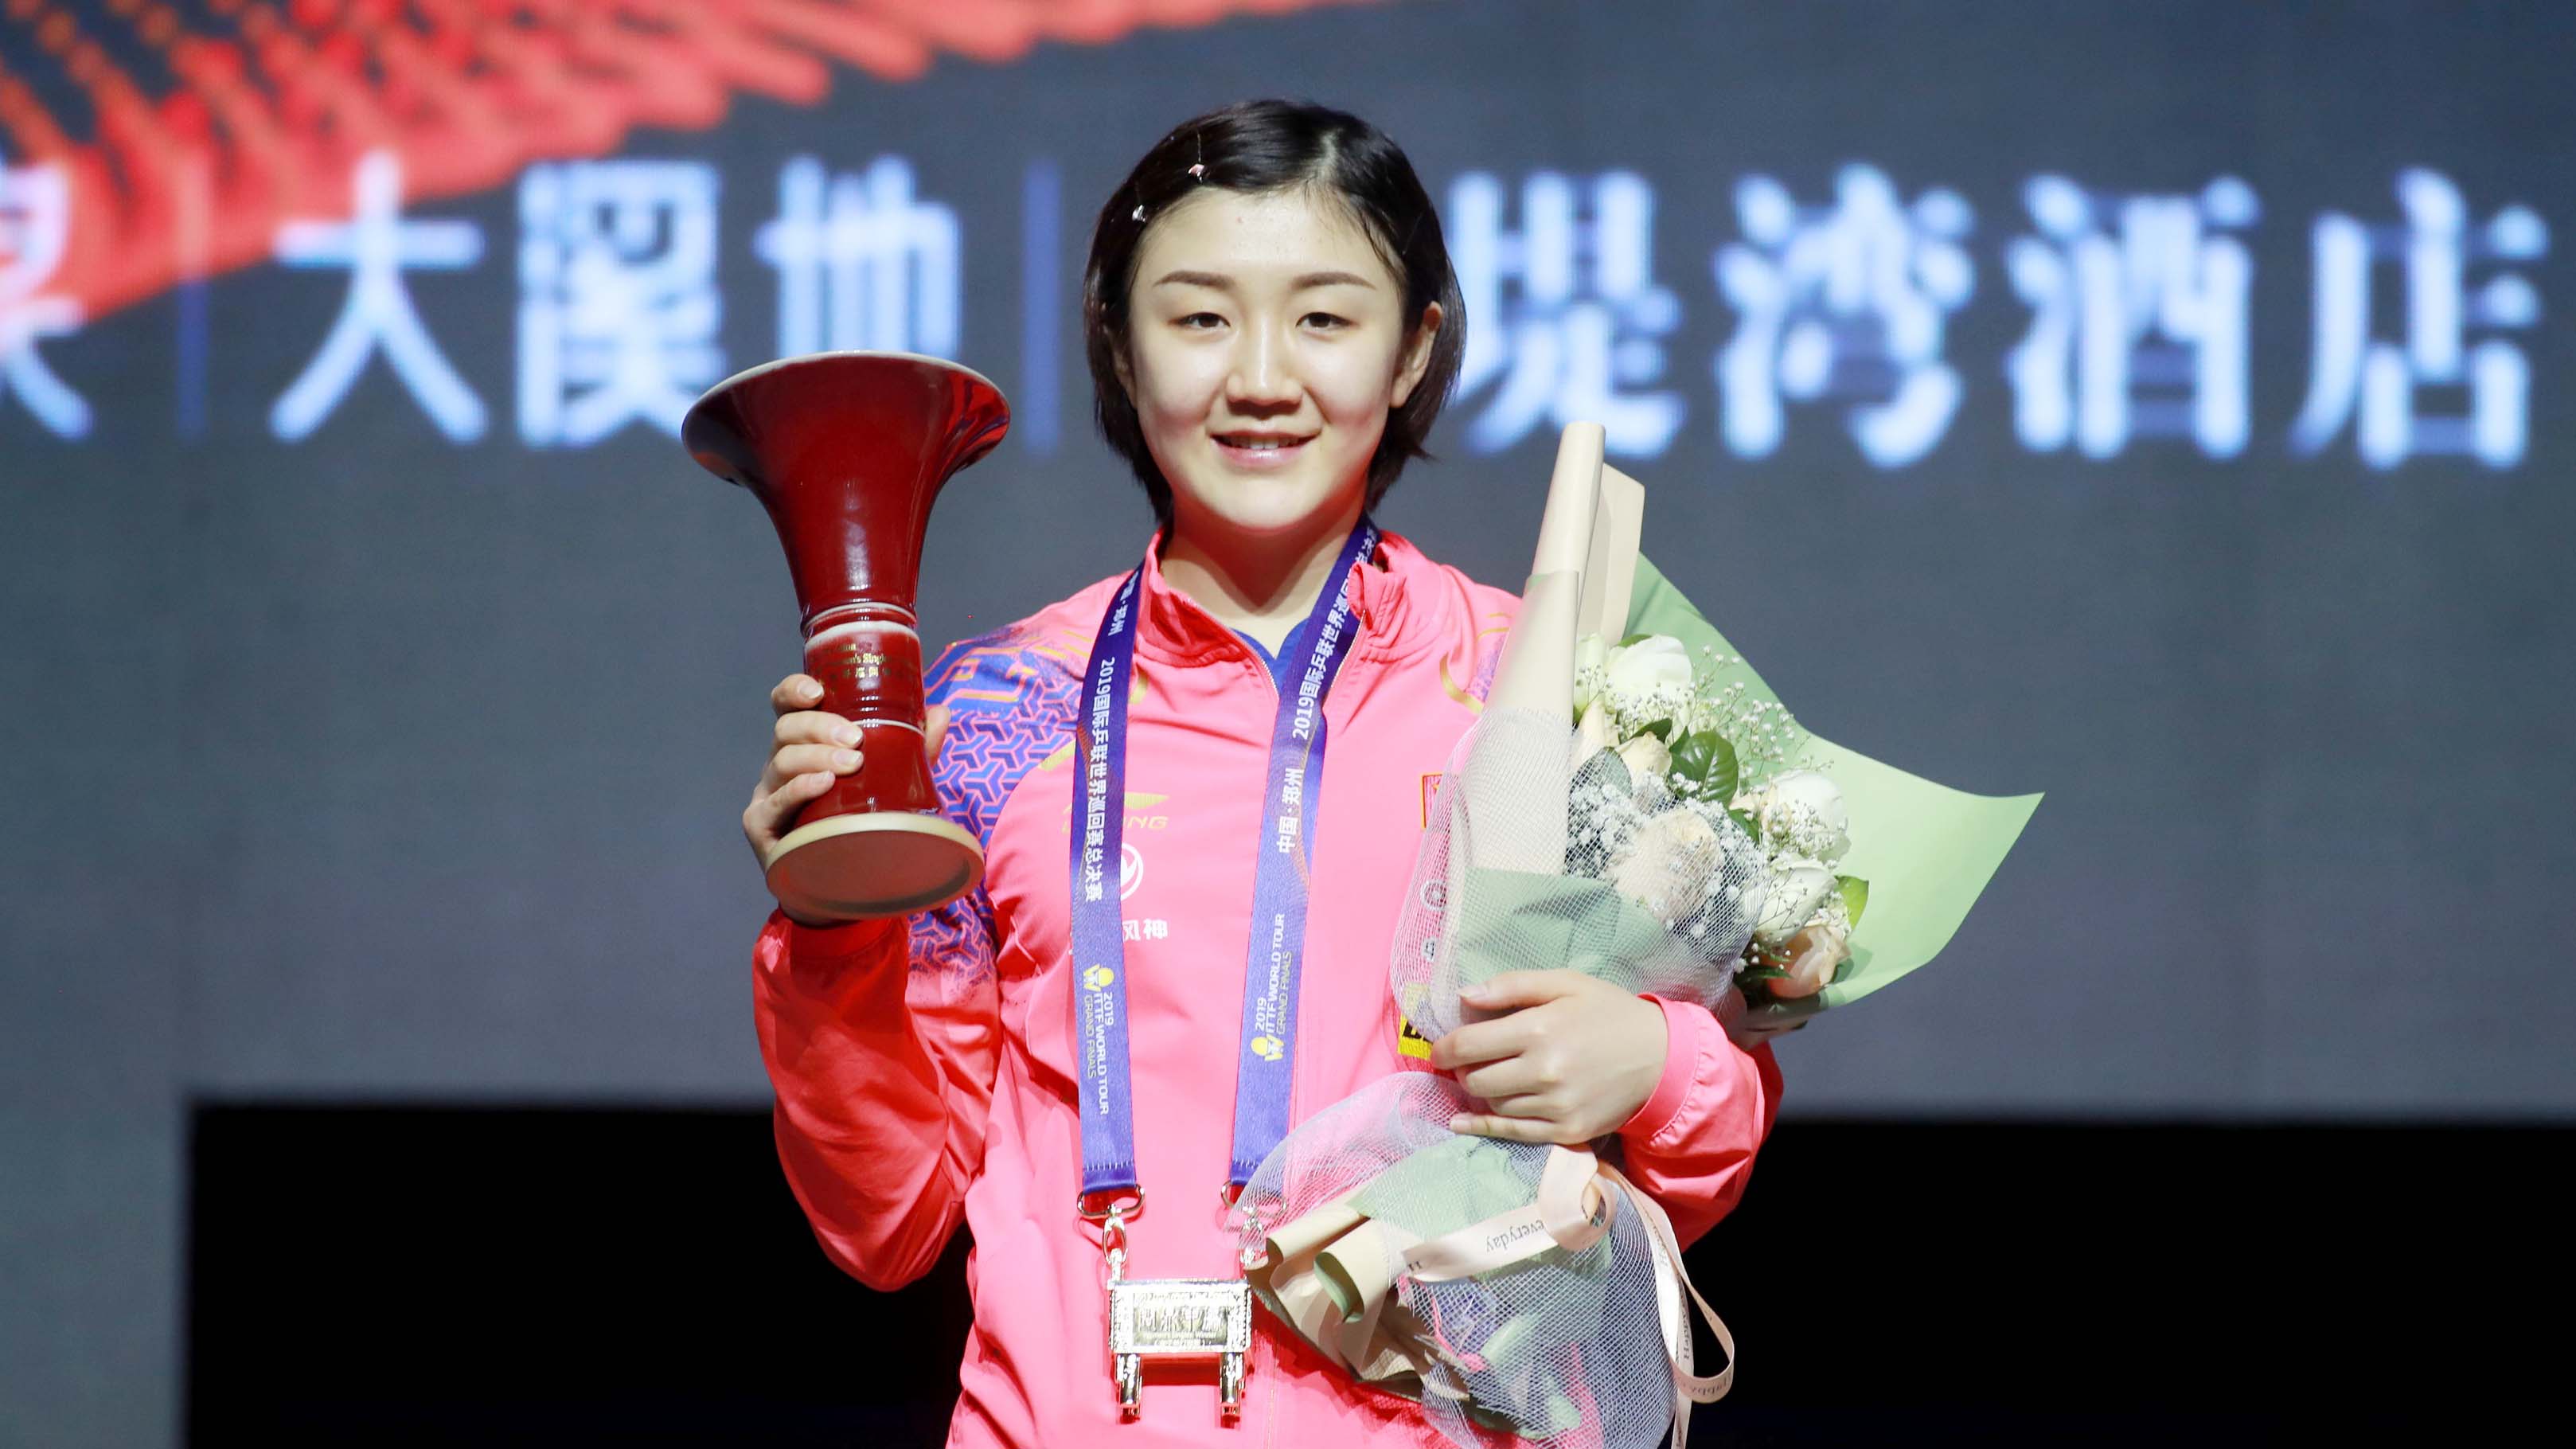 Chen Meng vince le Grand Finals 2019